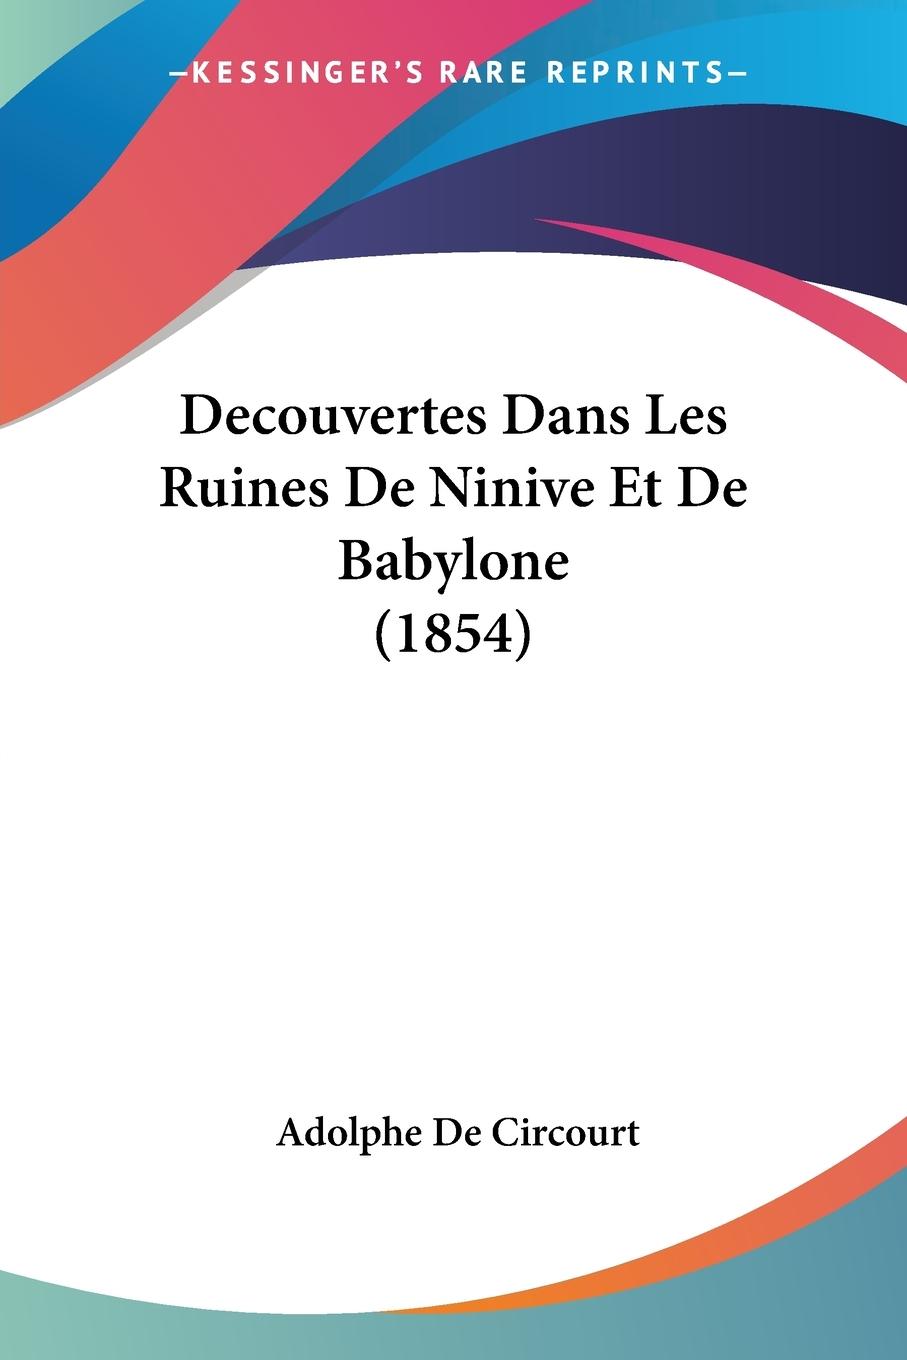 Decouvertes Dans Les Ruines De Ninive Et De Babylone (1854) - De Circourt, Adolphe